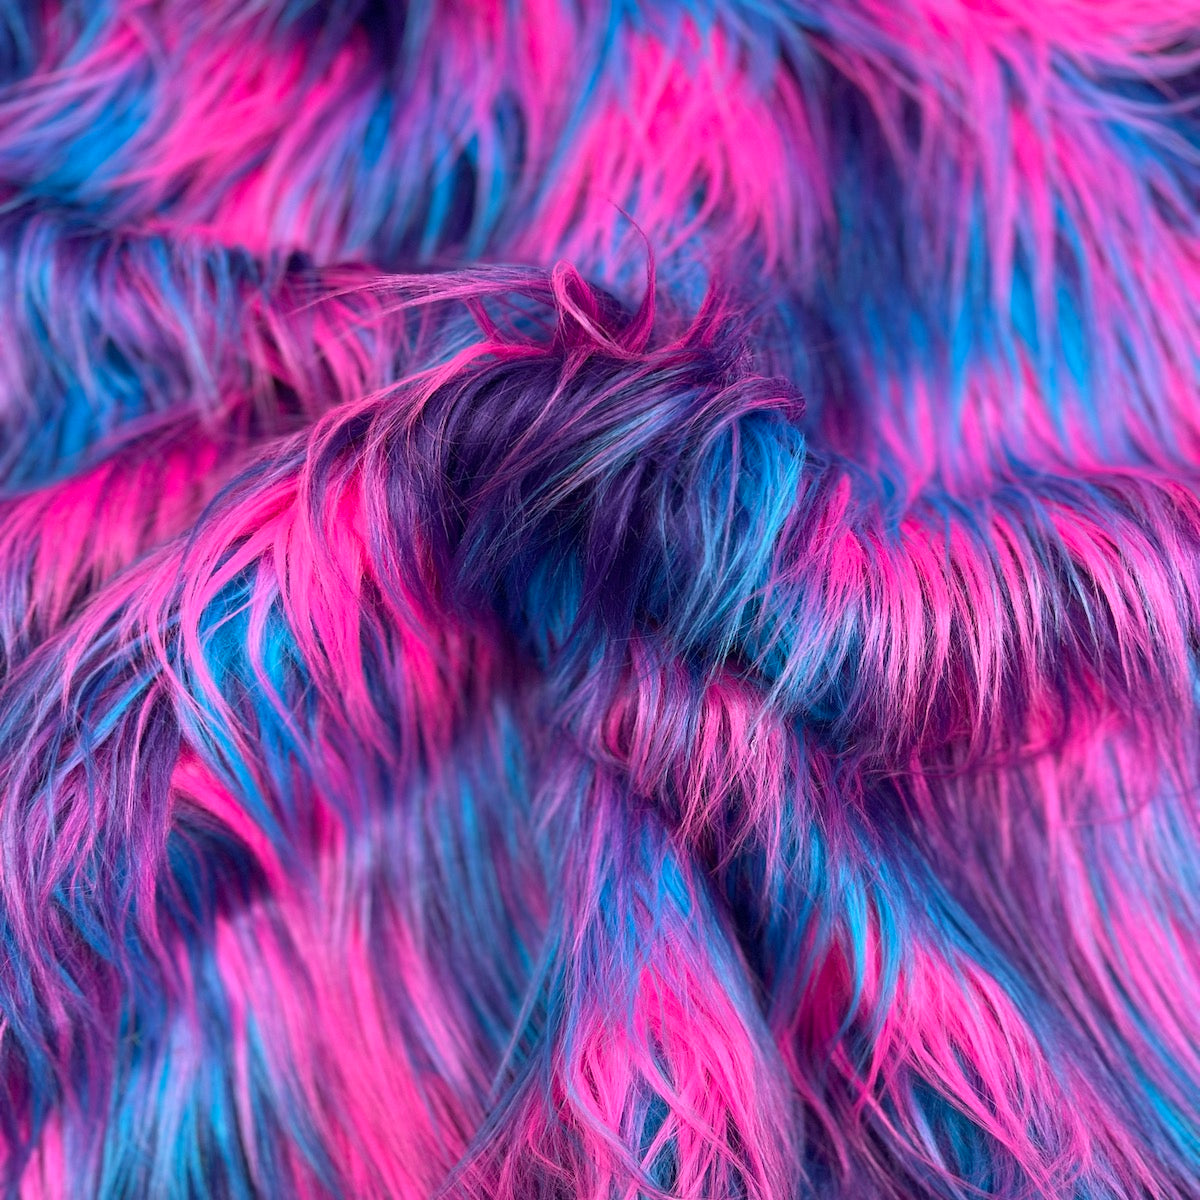 Tela de piel sintética lanuda de tres tonos azul, rosa y morado